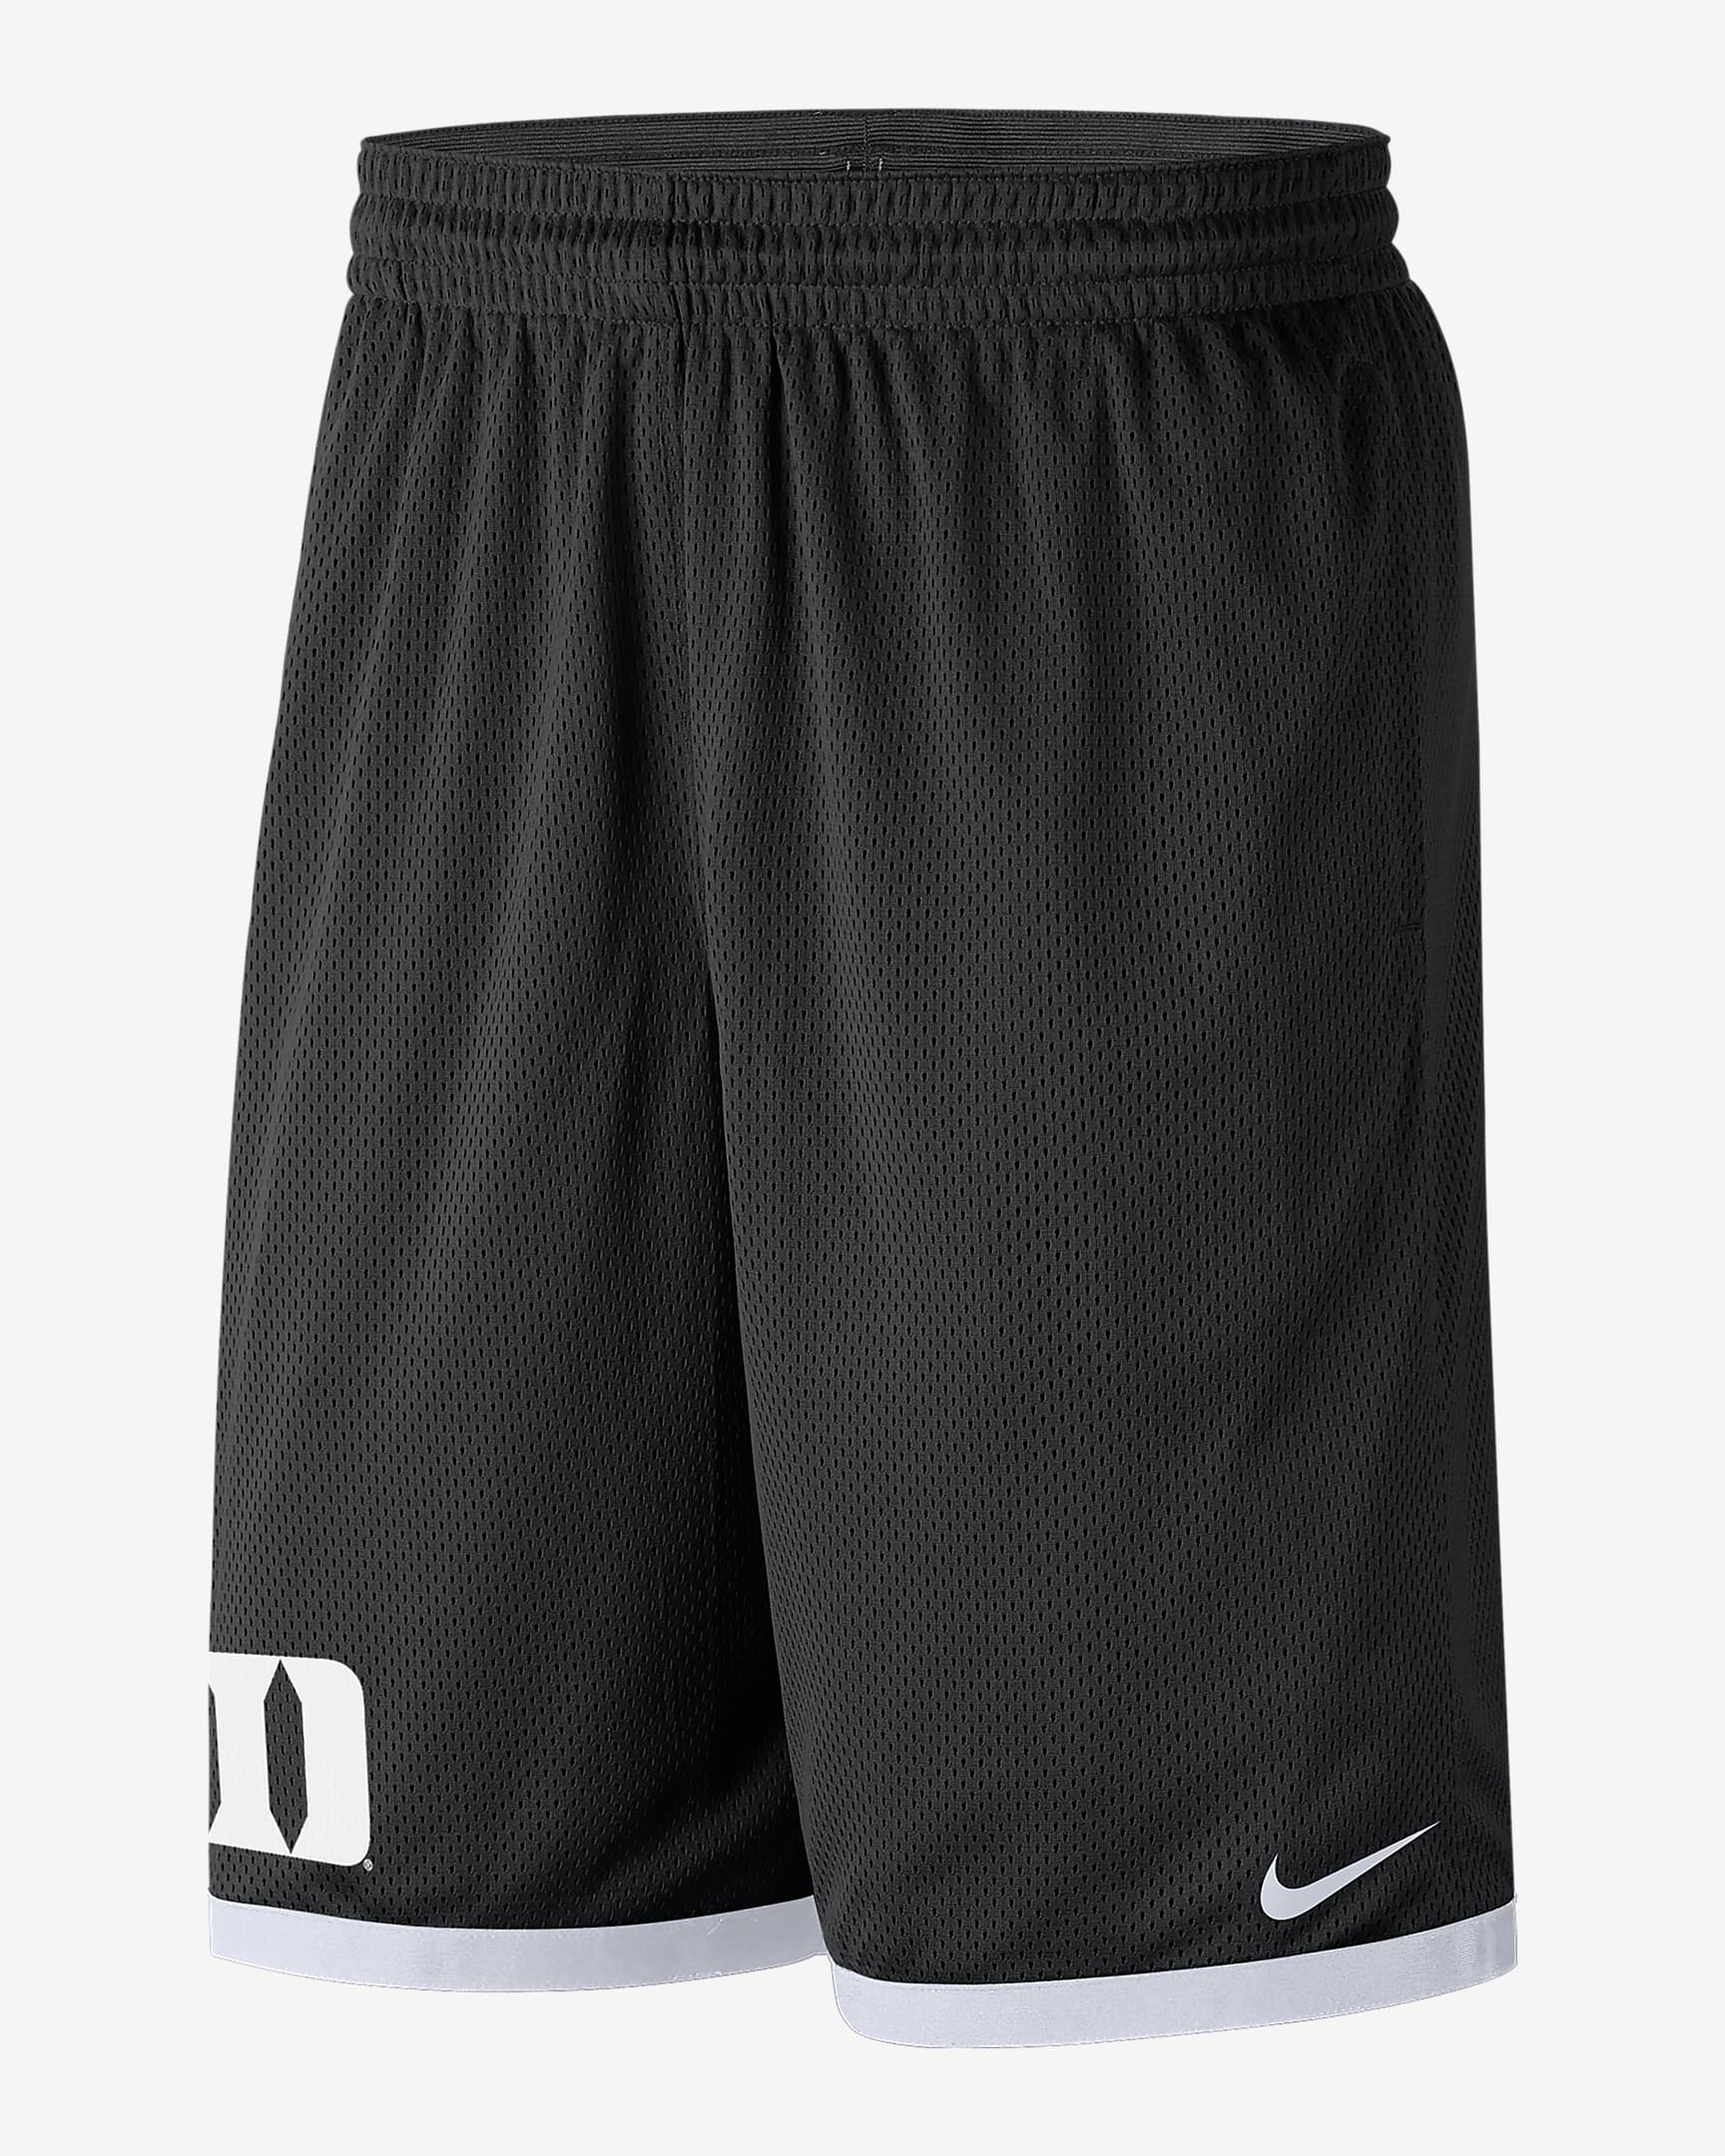 Duke Men's Nike College Mesh Shorts. Nike.com